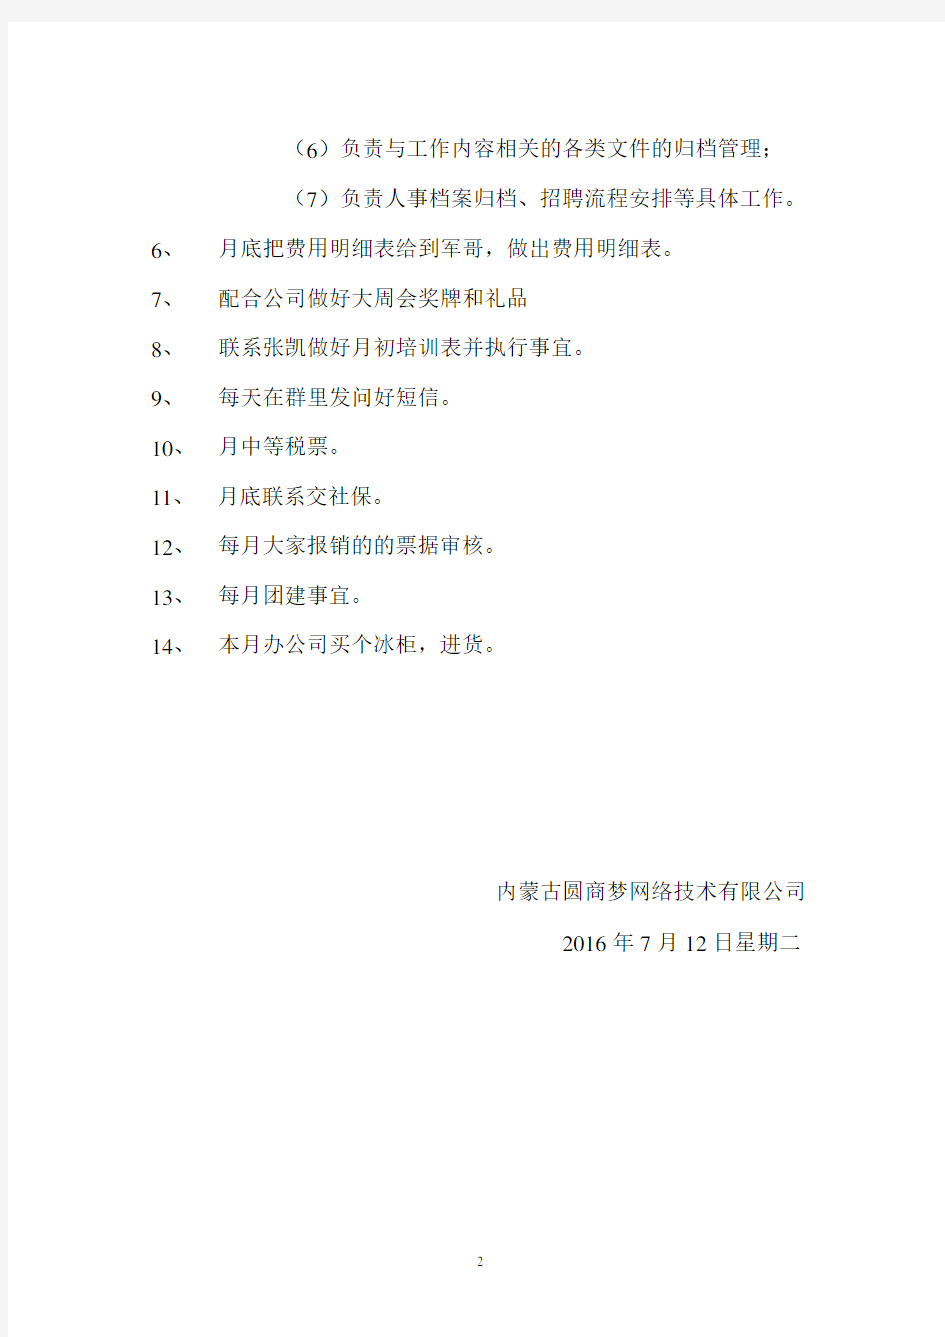 行政工作日志(2020年10月整理).pdf